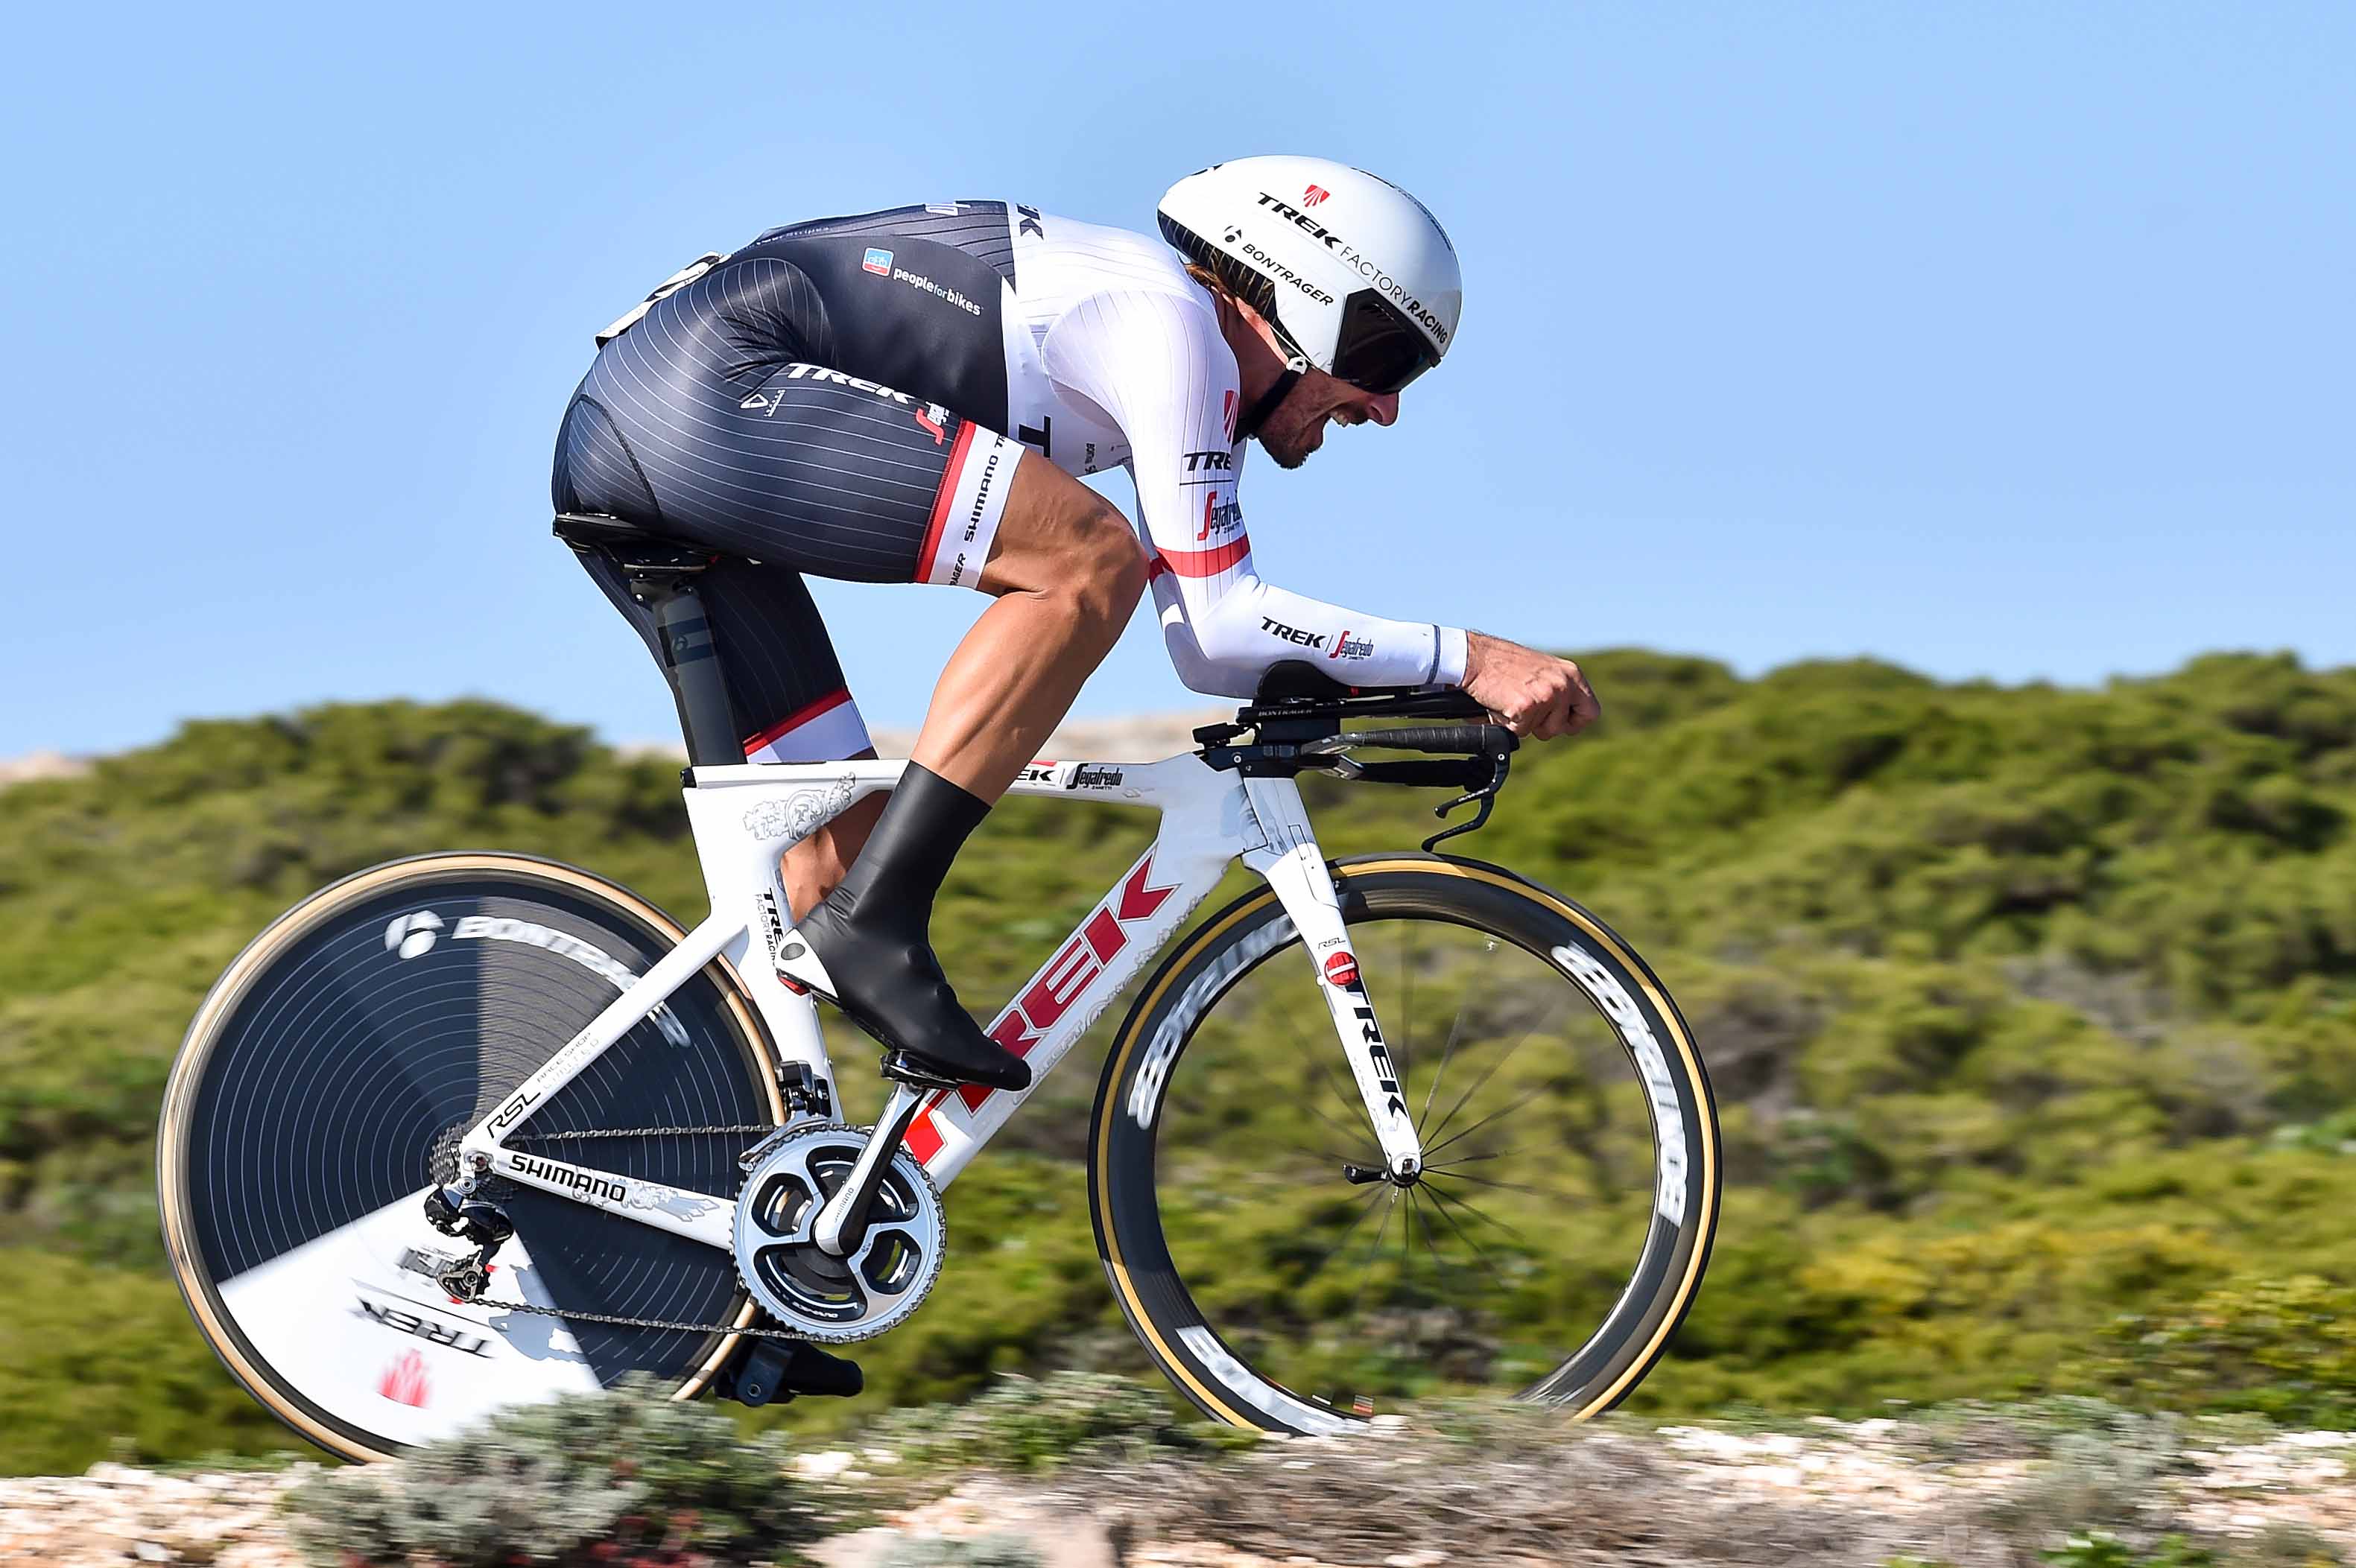 Volta ao Algarve em Bicicleta 2016: Stage 3 Results | Cyclingnews